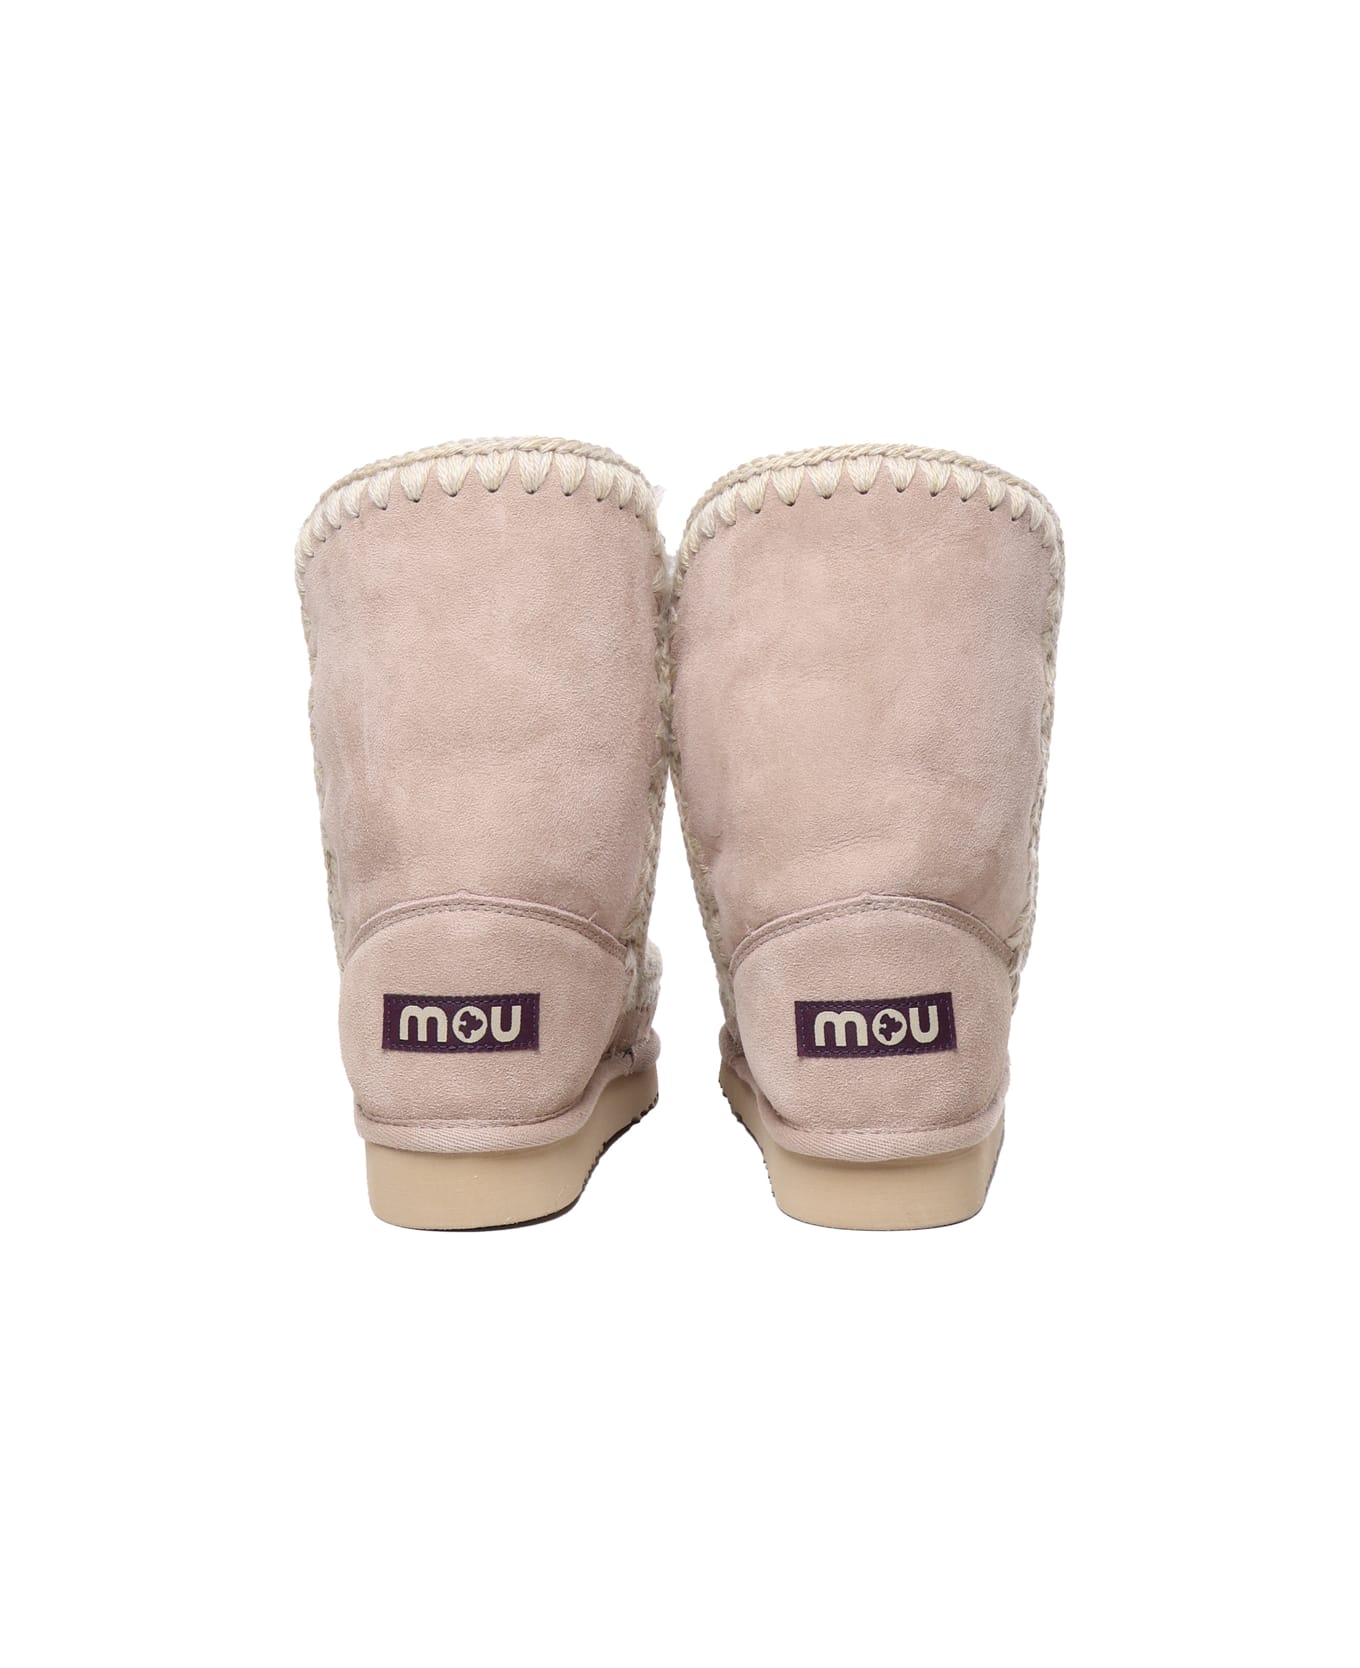 Mou Eskimo Dream Boots - Beige